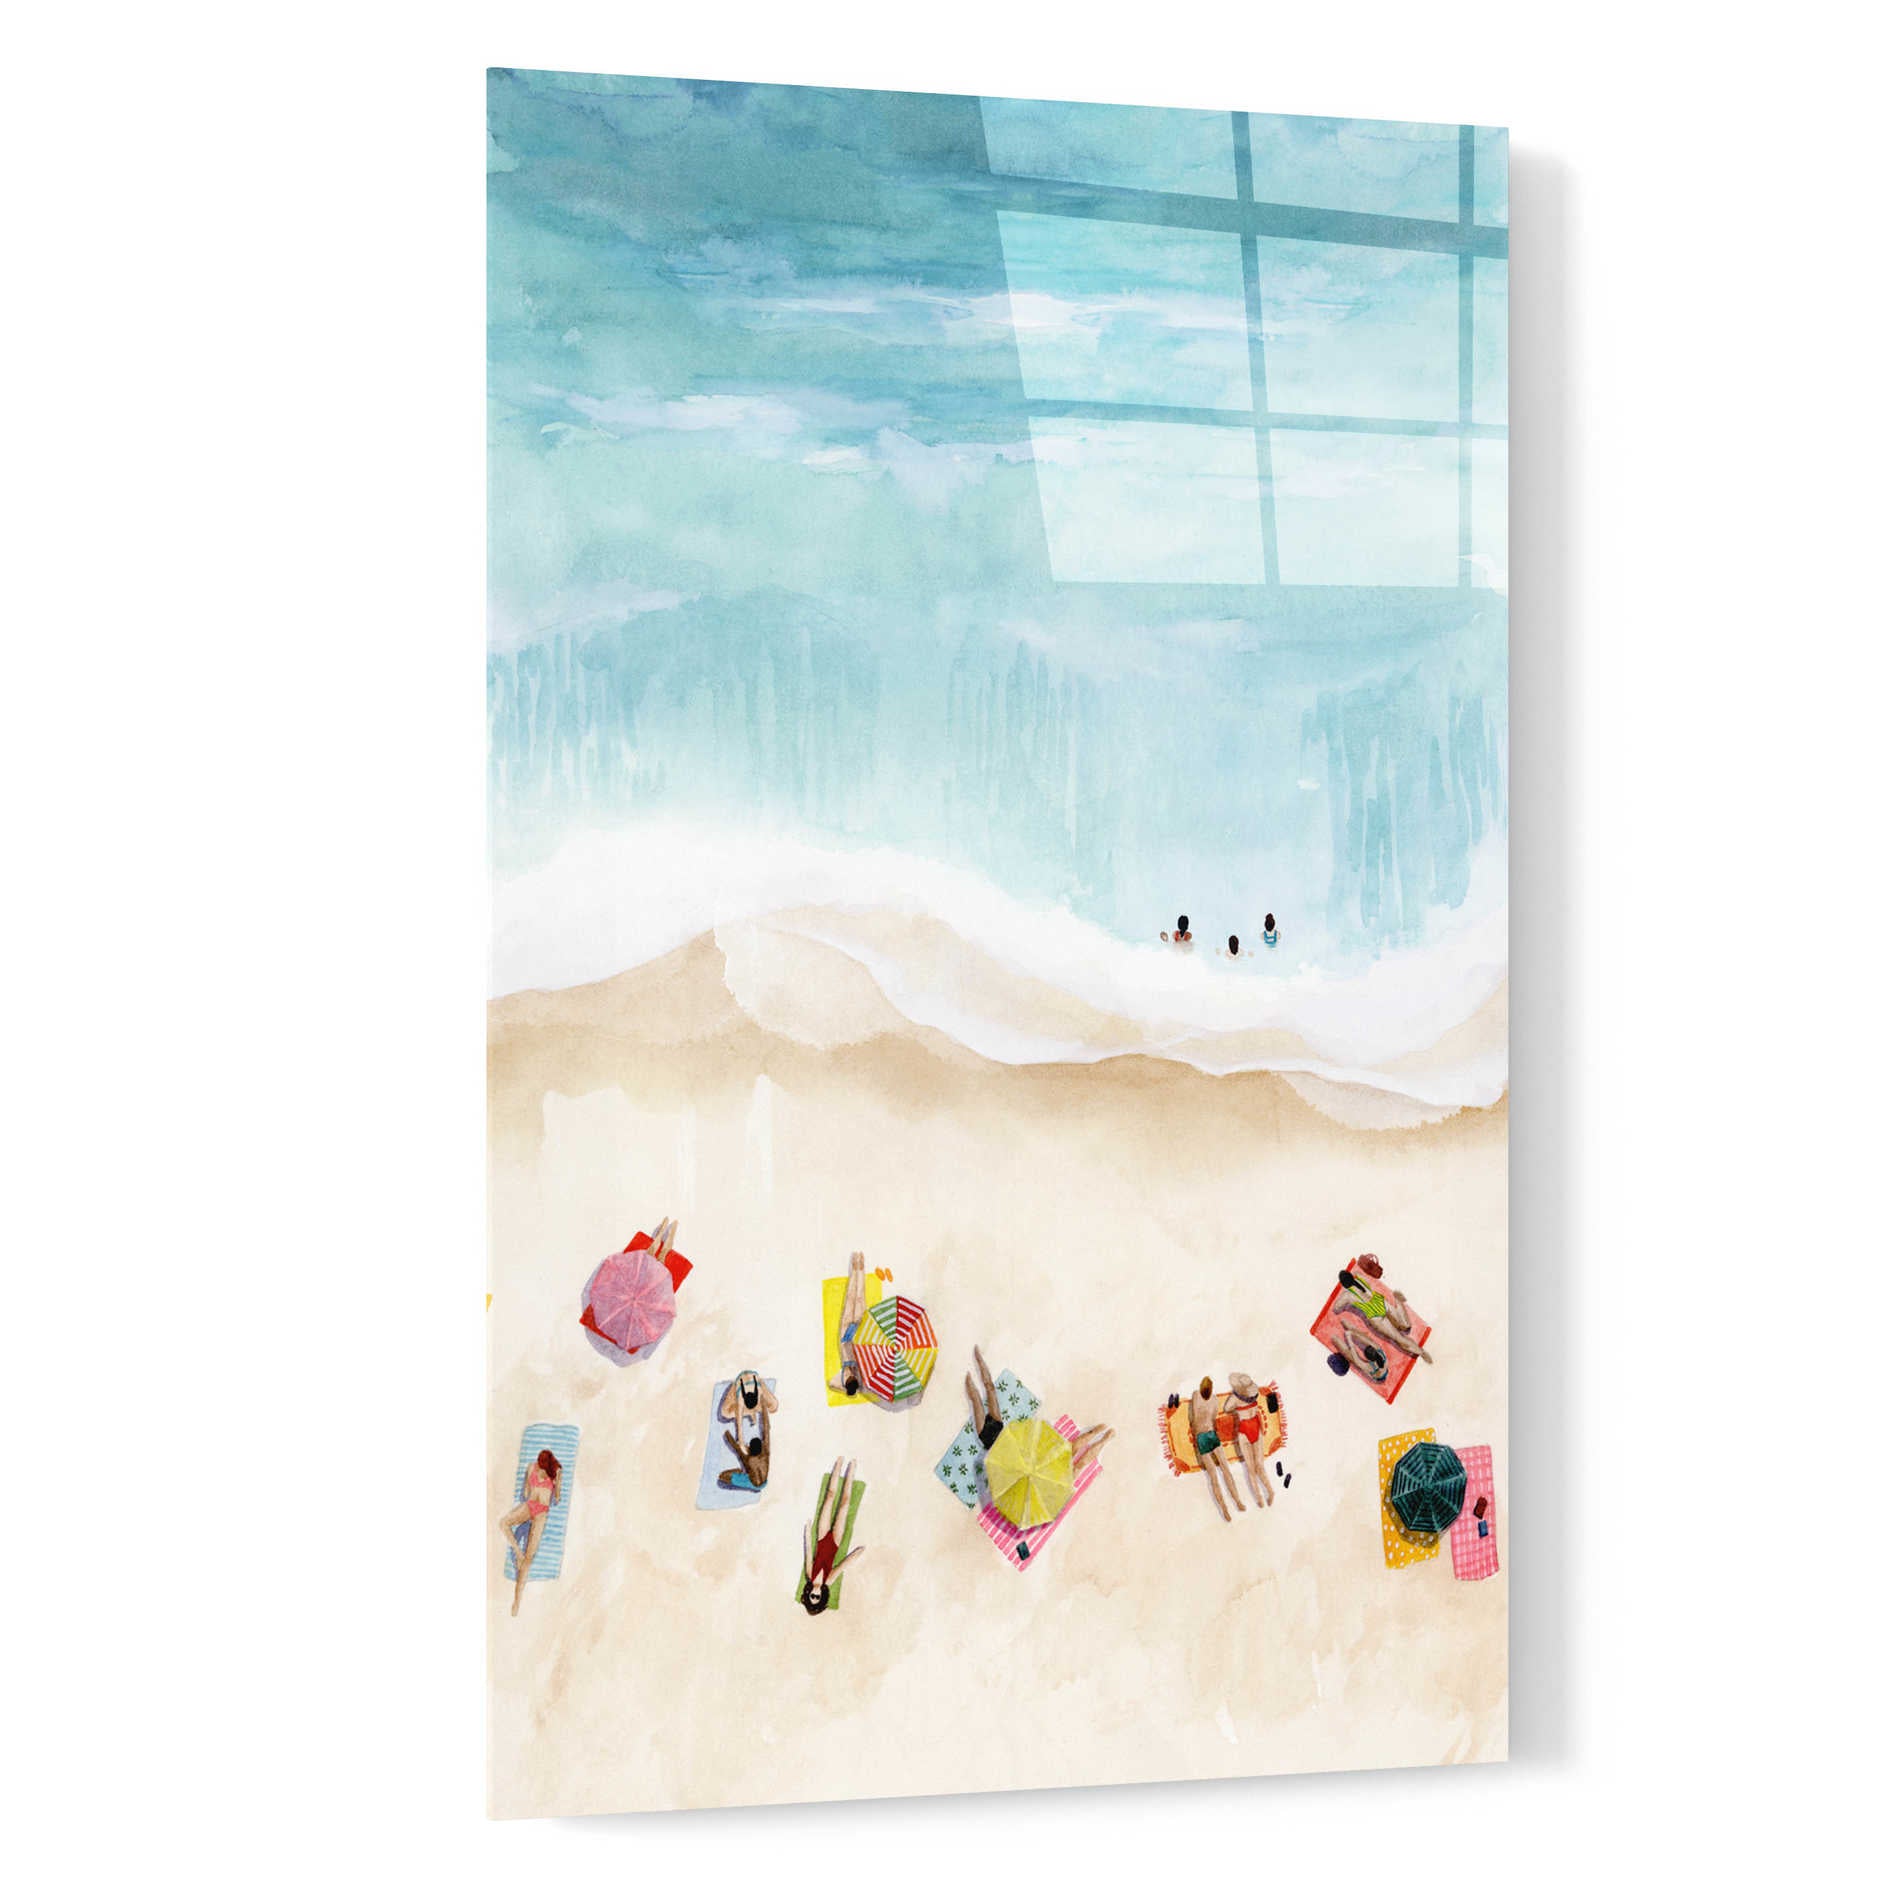 Epic Art 'Beach Week II' by Grace Popp, Acrylic Wall Glass,16x24